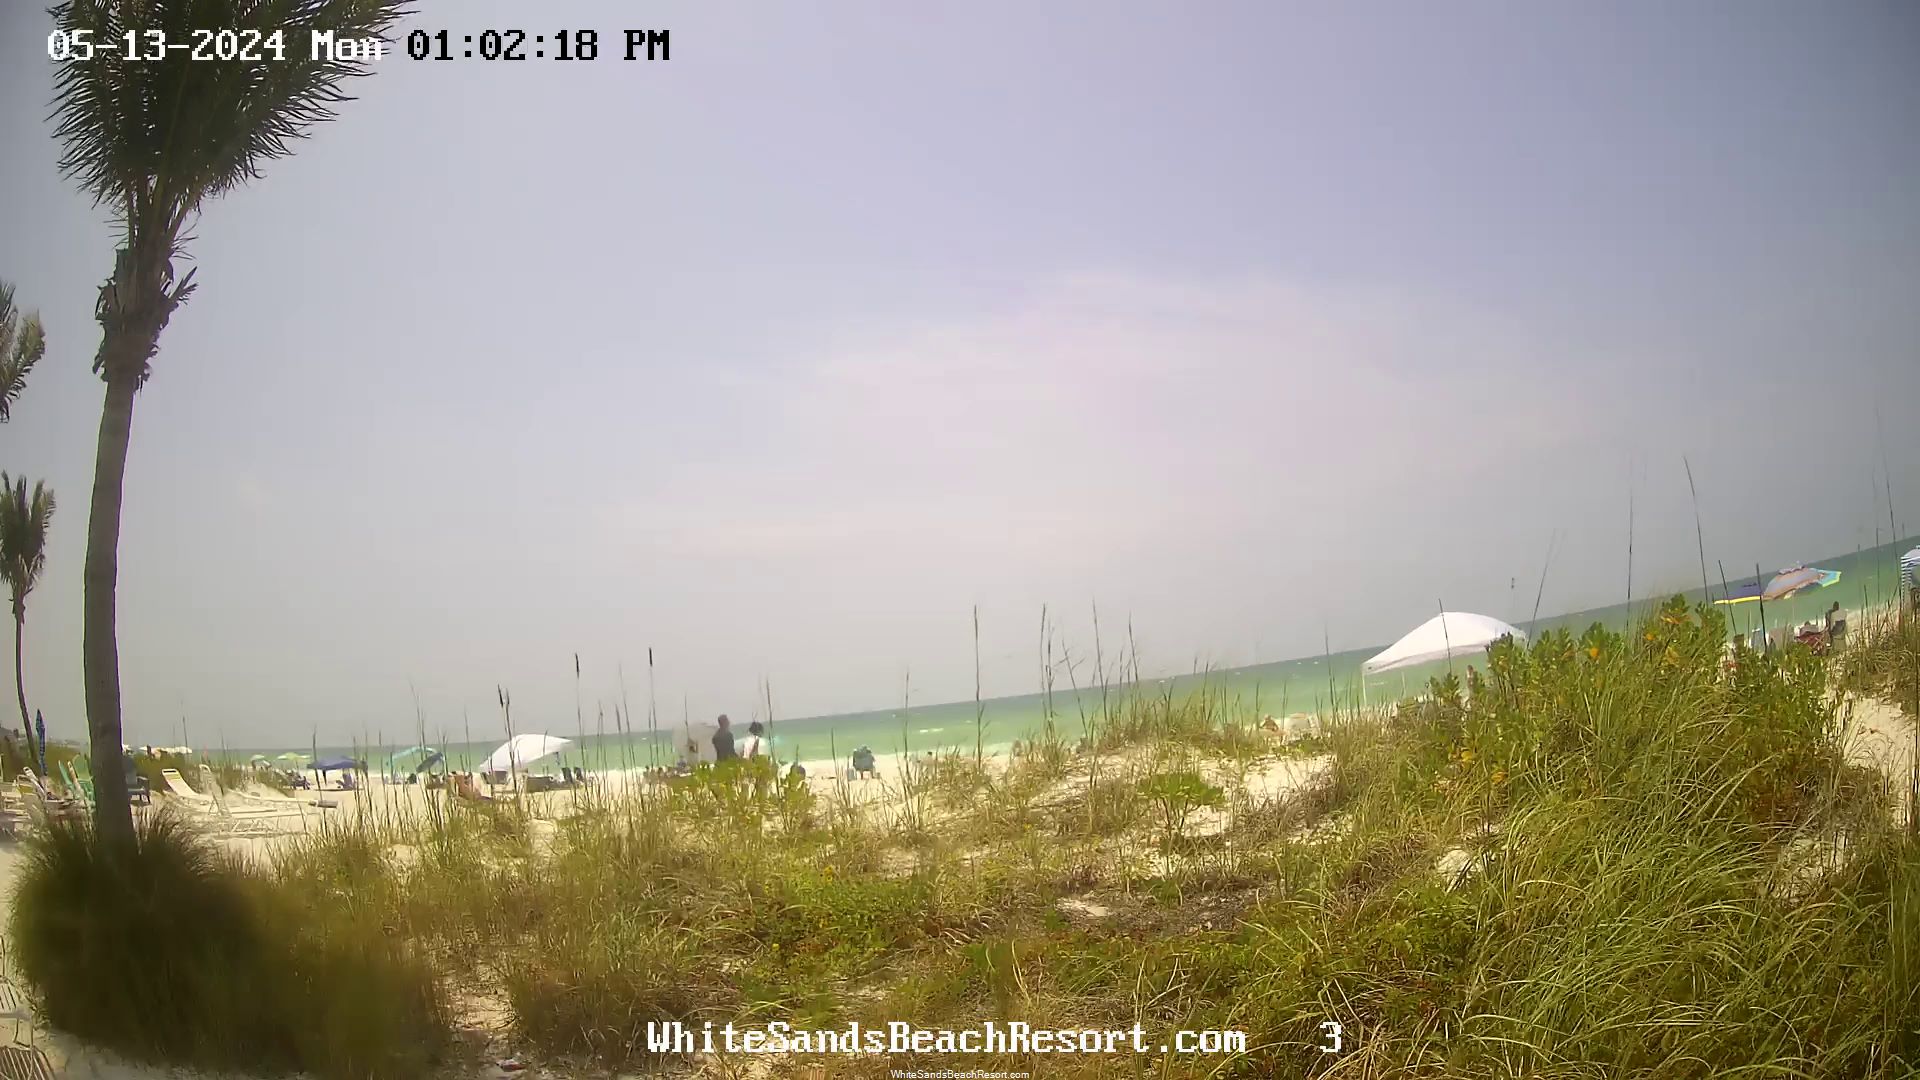 Holmes Beach, Florida Vie. 12:56